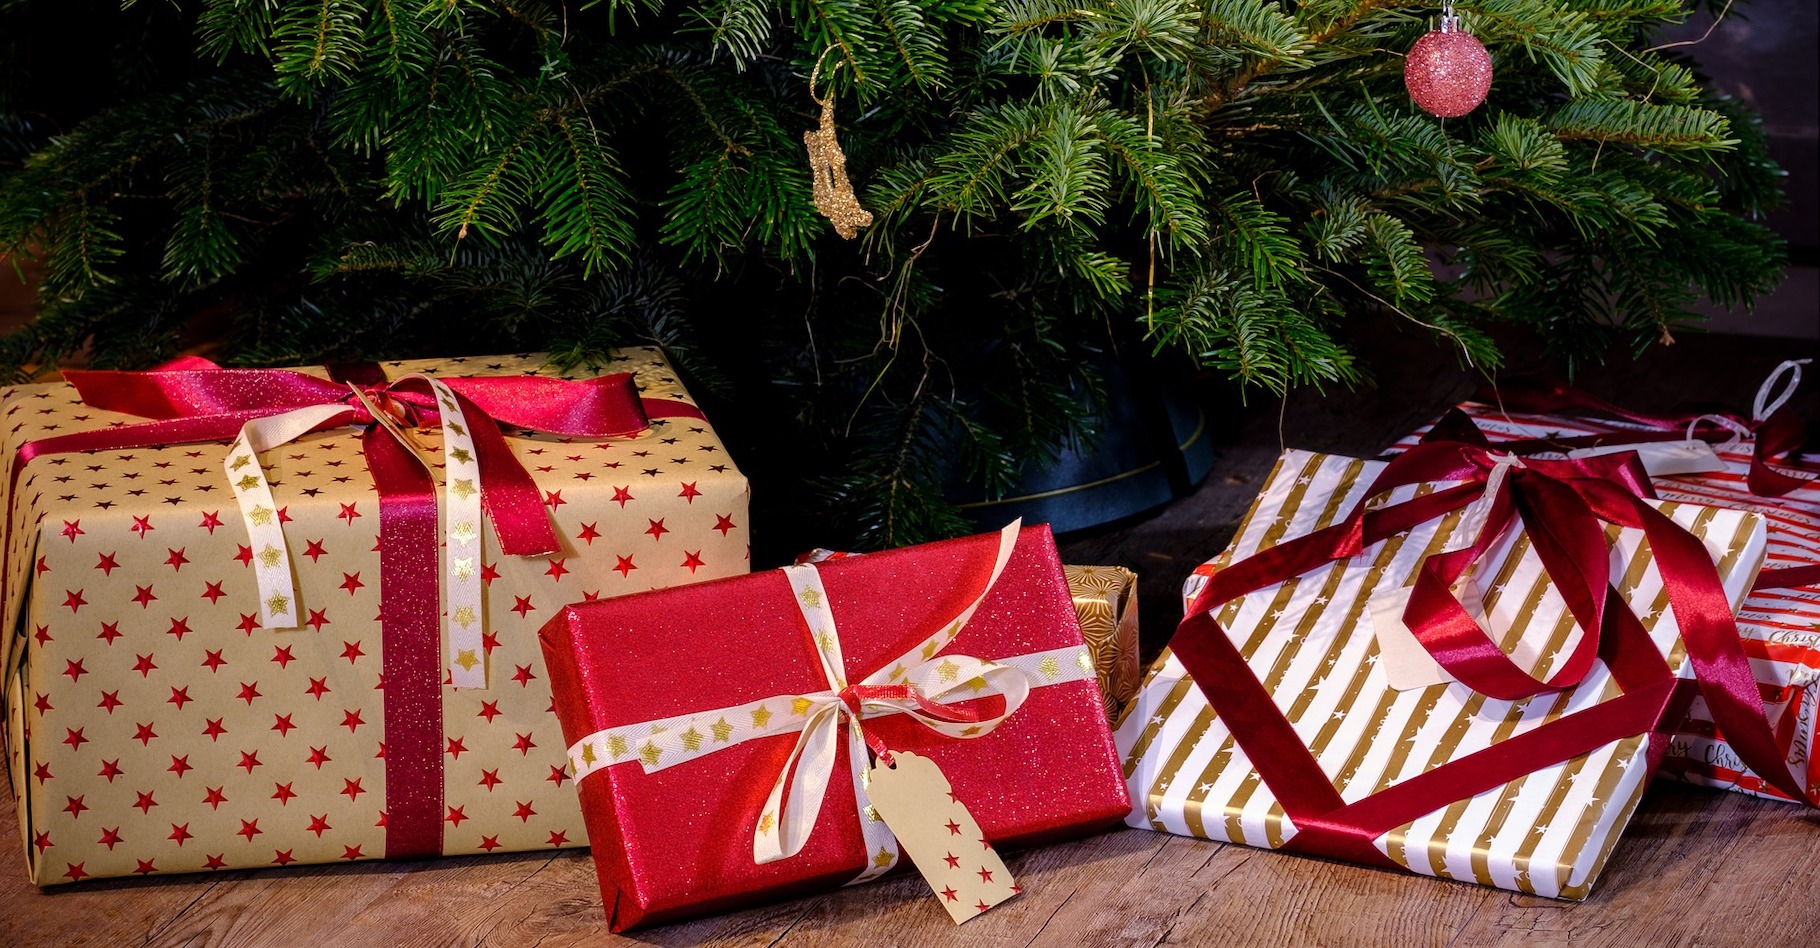 Futura vous recommande quelques livres à poser sous le sapin au prochain Noël. © Bru-nO, Pixabay, CC0 Creative Commons